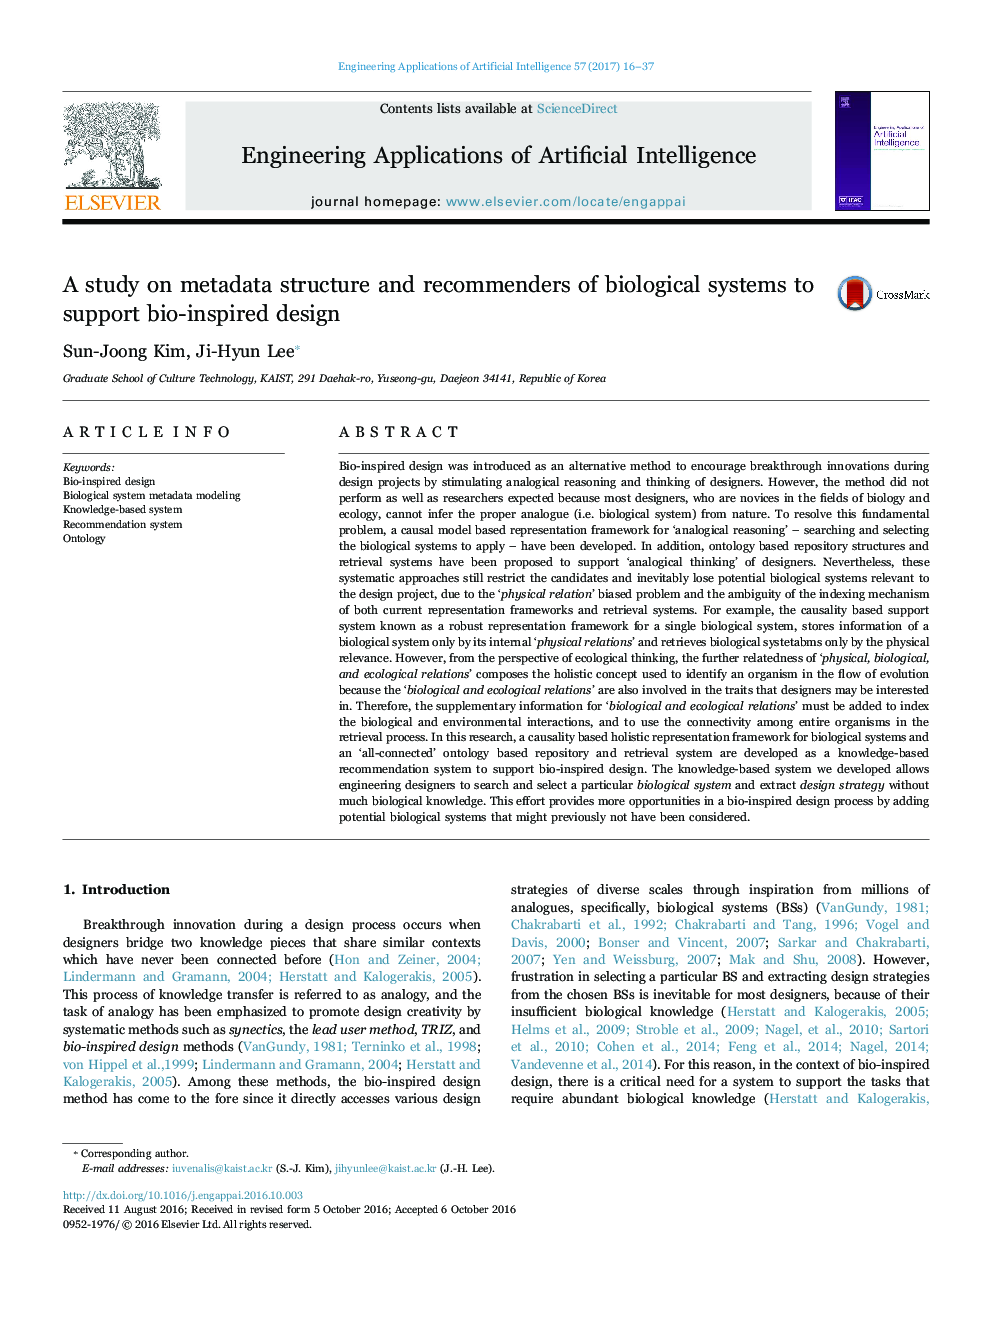 یک مطالعه در مورد ساختار ابرداده و پیشنهاد دهنده سیستم های بیولوژیکی برای حمایت از طراحی الهام گرفته از بیوگرافی 